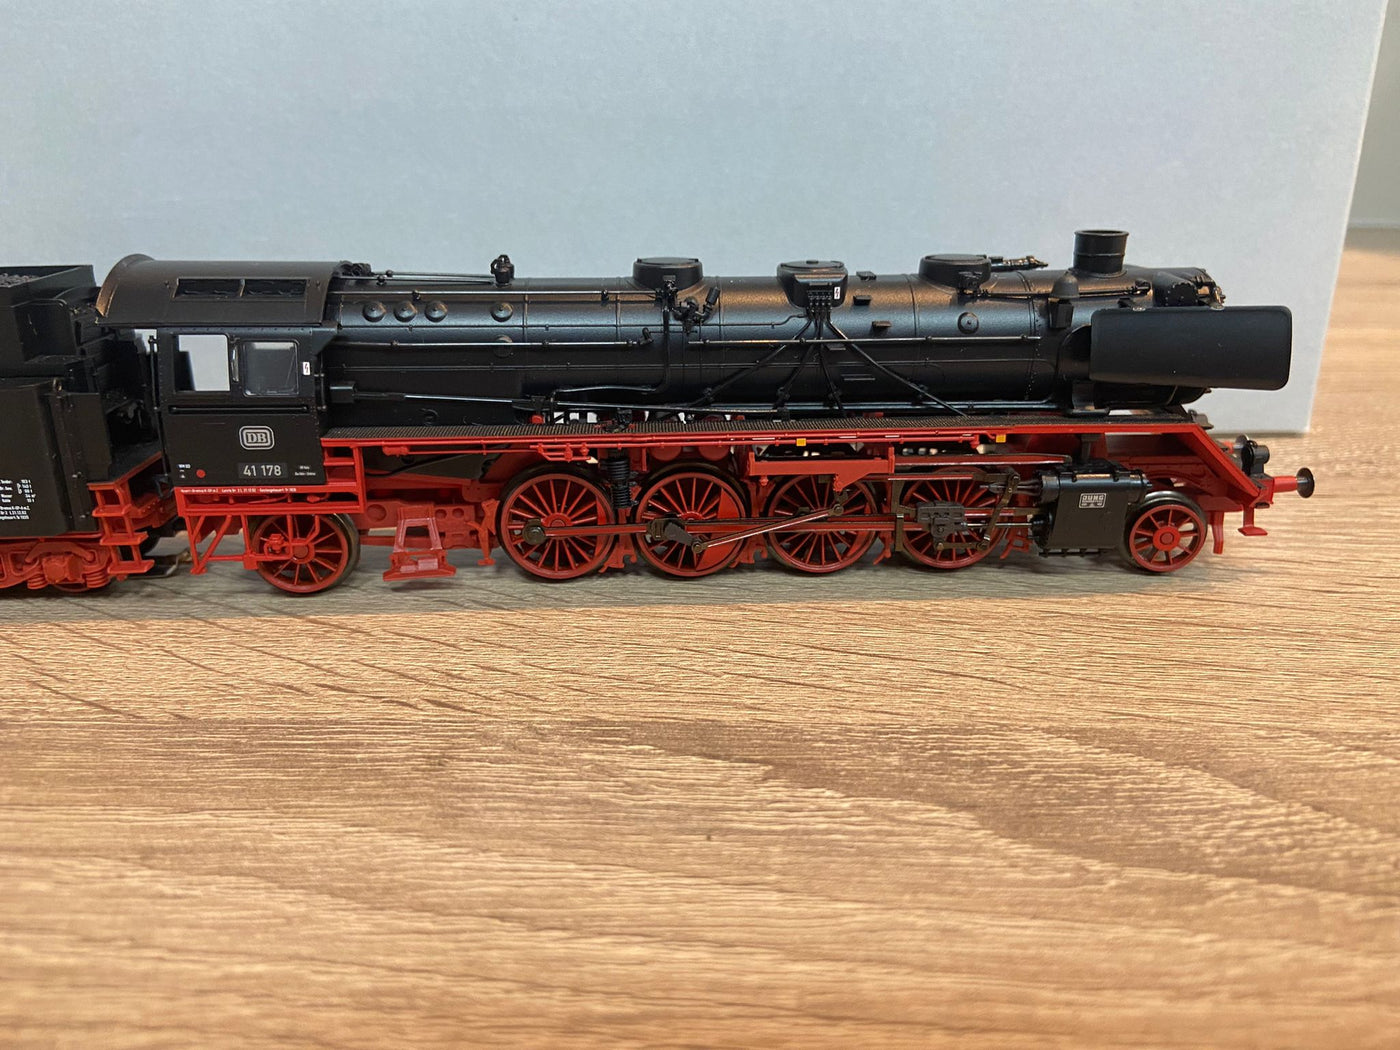 Marklin 37923 BR 41 Freight train - steam locomotive